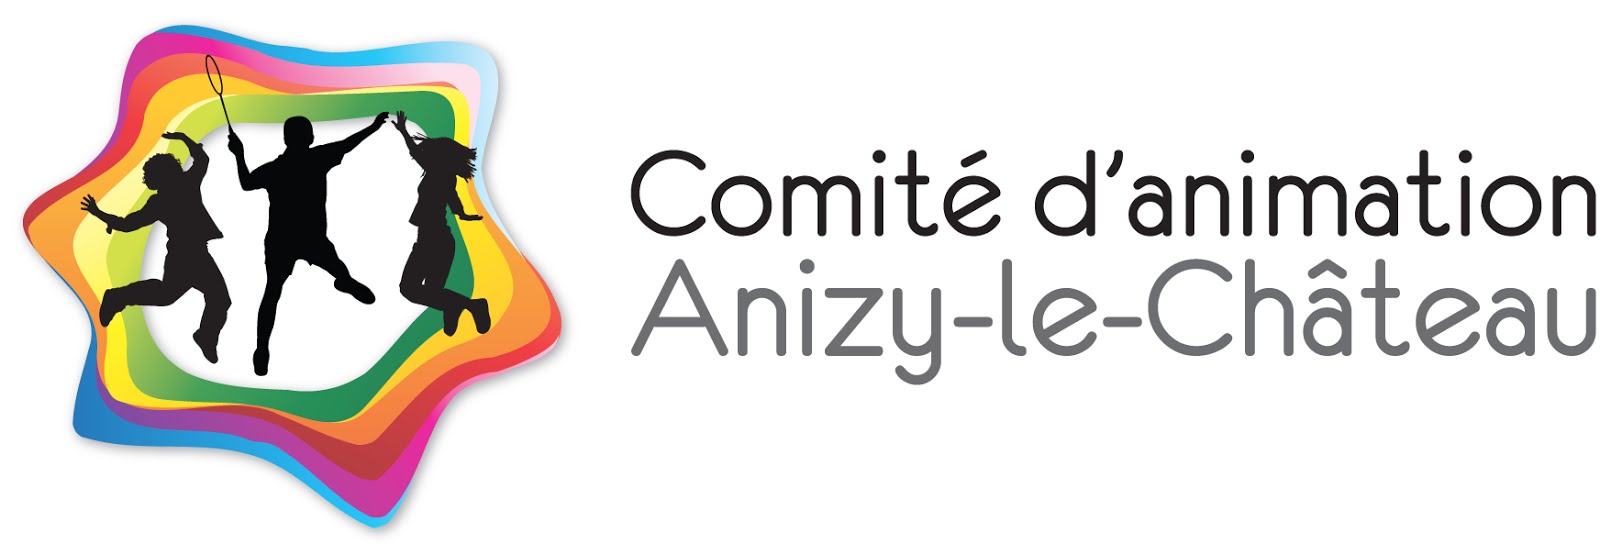 Comité d'animation d'Anizy-le-Château